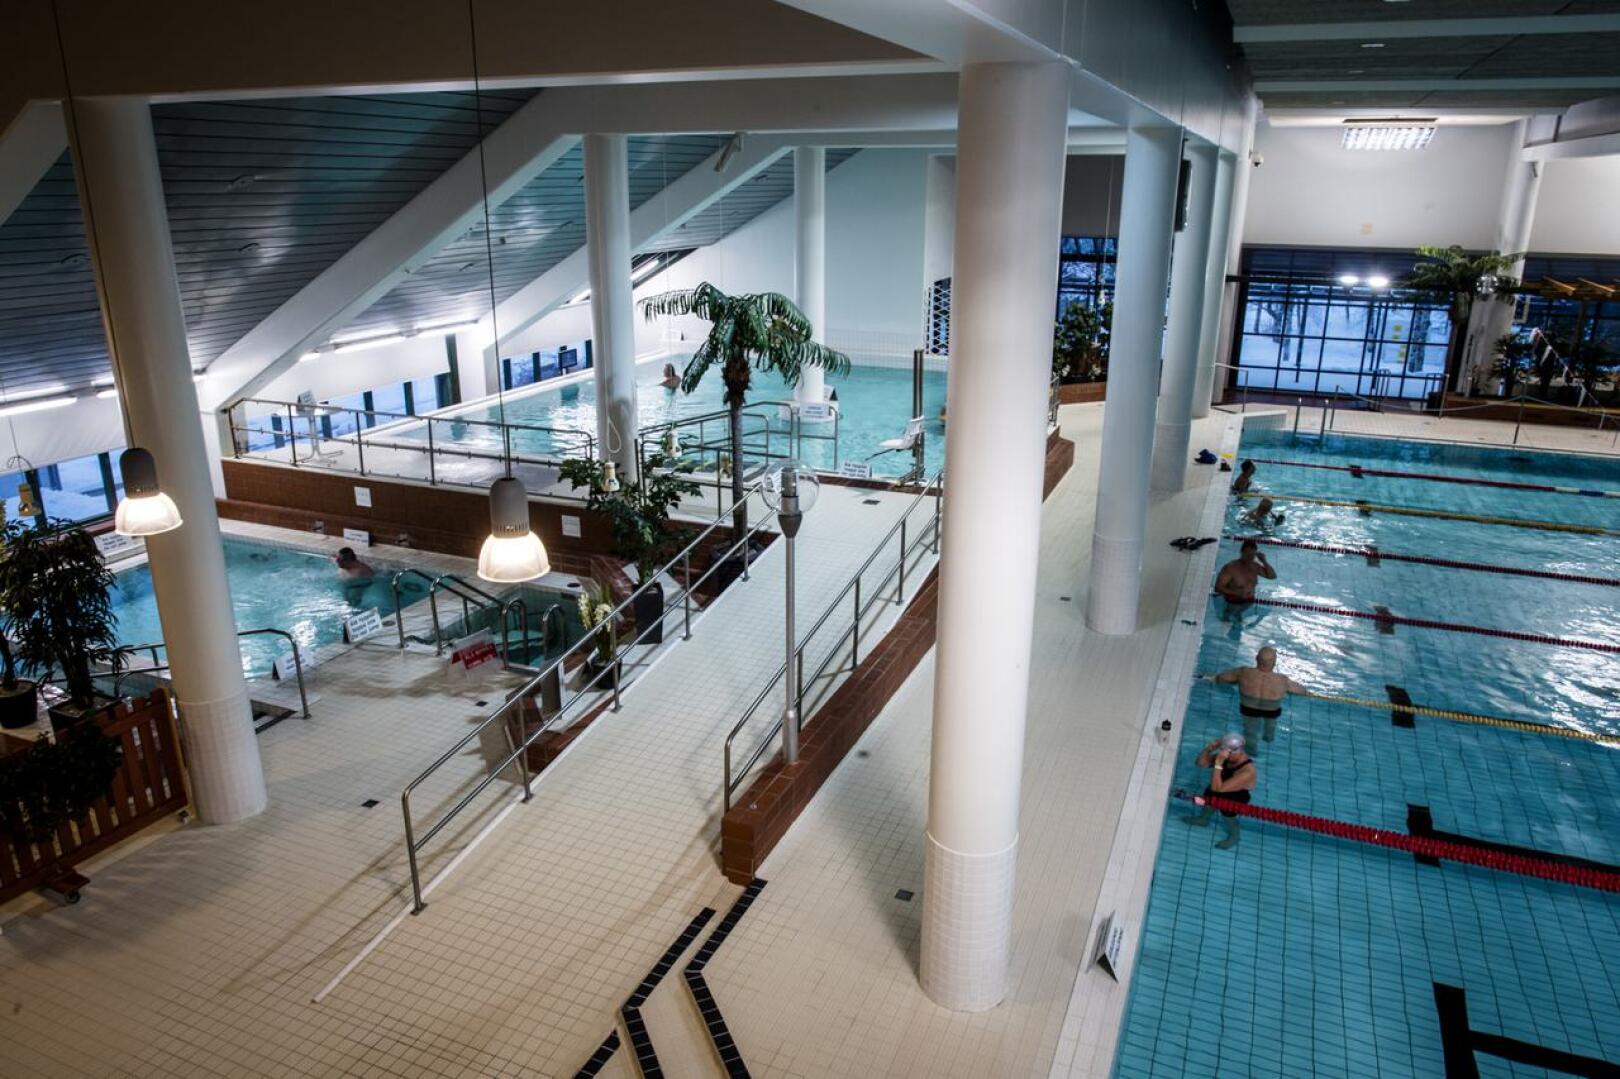 Koronarajoitukset ovat pienentäneet liikuntapaikkojen aukioloja ja käyttöastetta. Näin on käynyt ajoittain myös uintikeskus VesiVeijarissa.